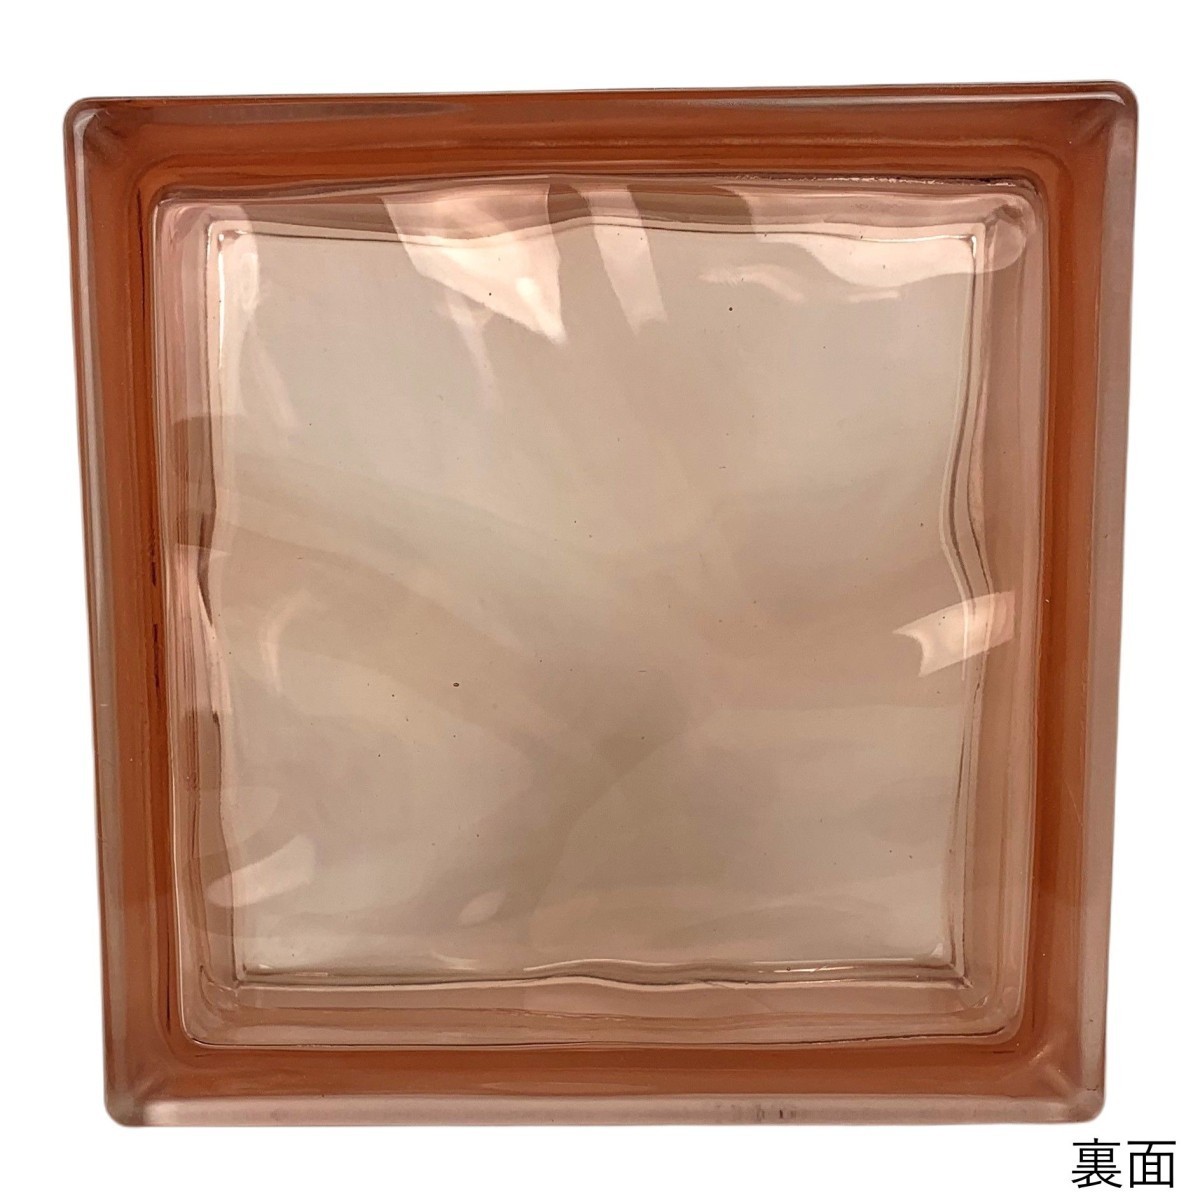 6個セット 送料無料 ガラスブロック 世界で有名なブランド品 厚み80mmピンク色雲 gb4180-6p_画像4